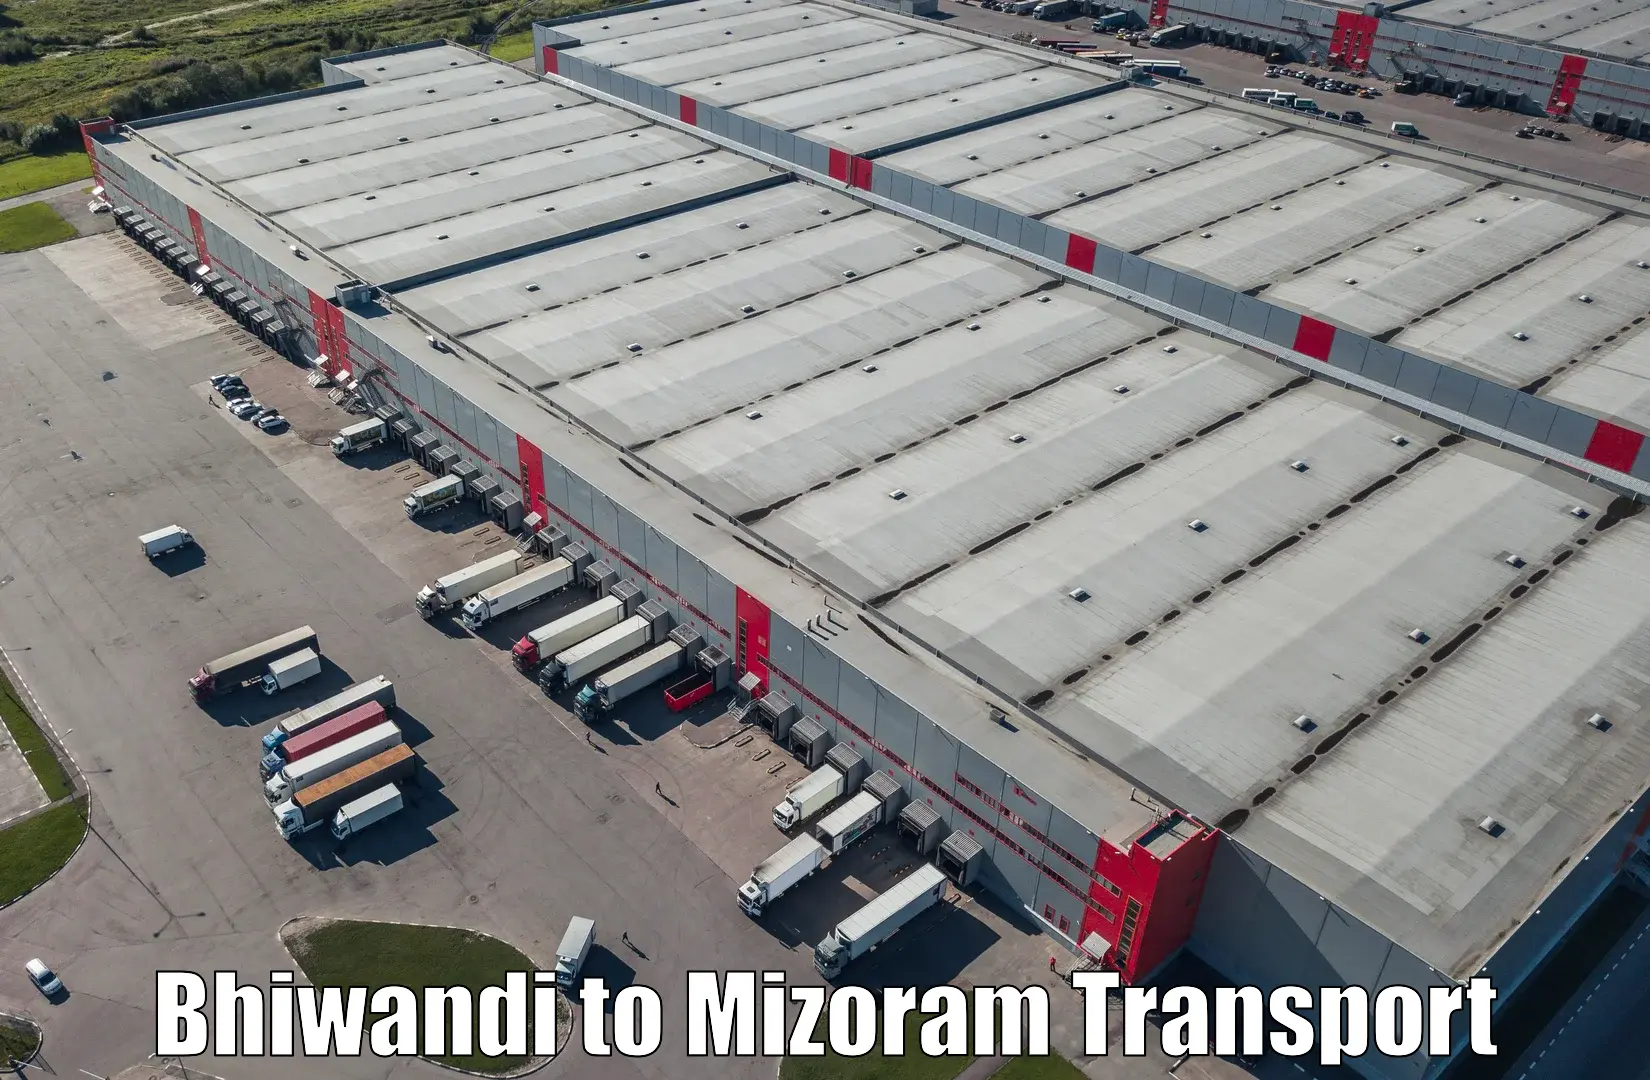 Domestic transport services Bhiwandi to Khawzawl